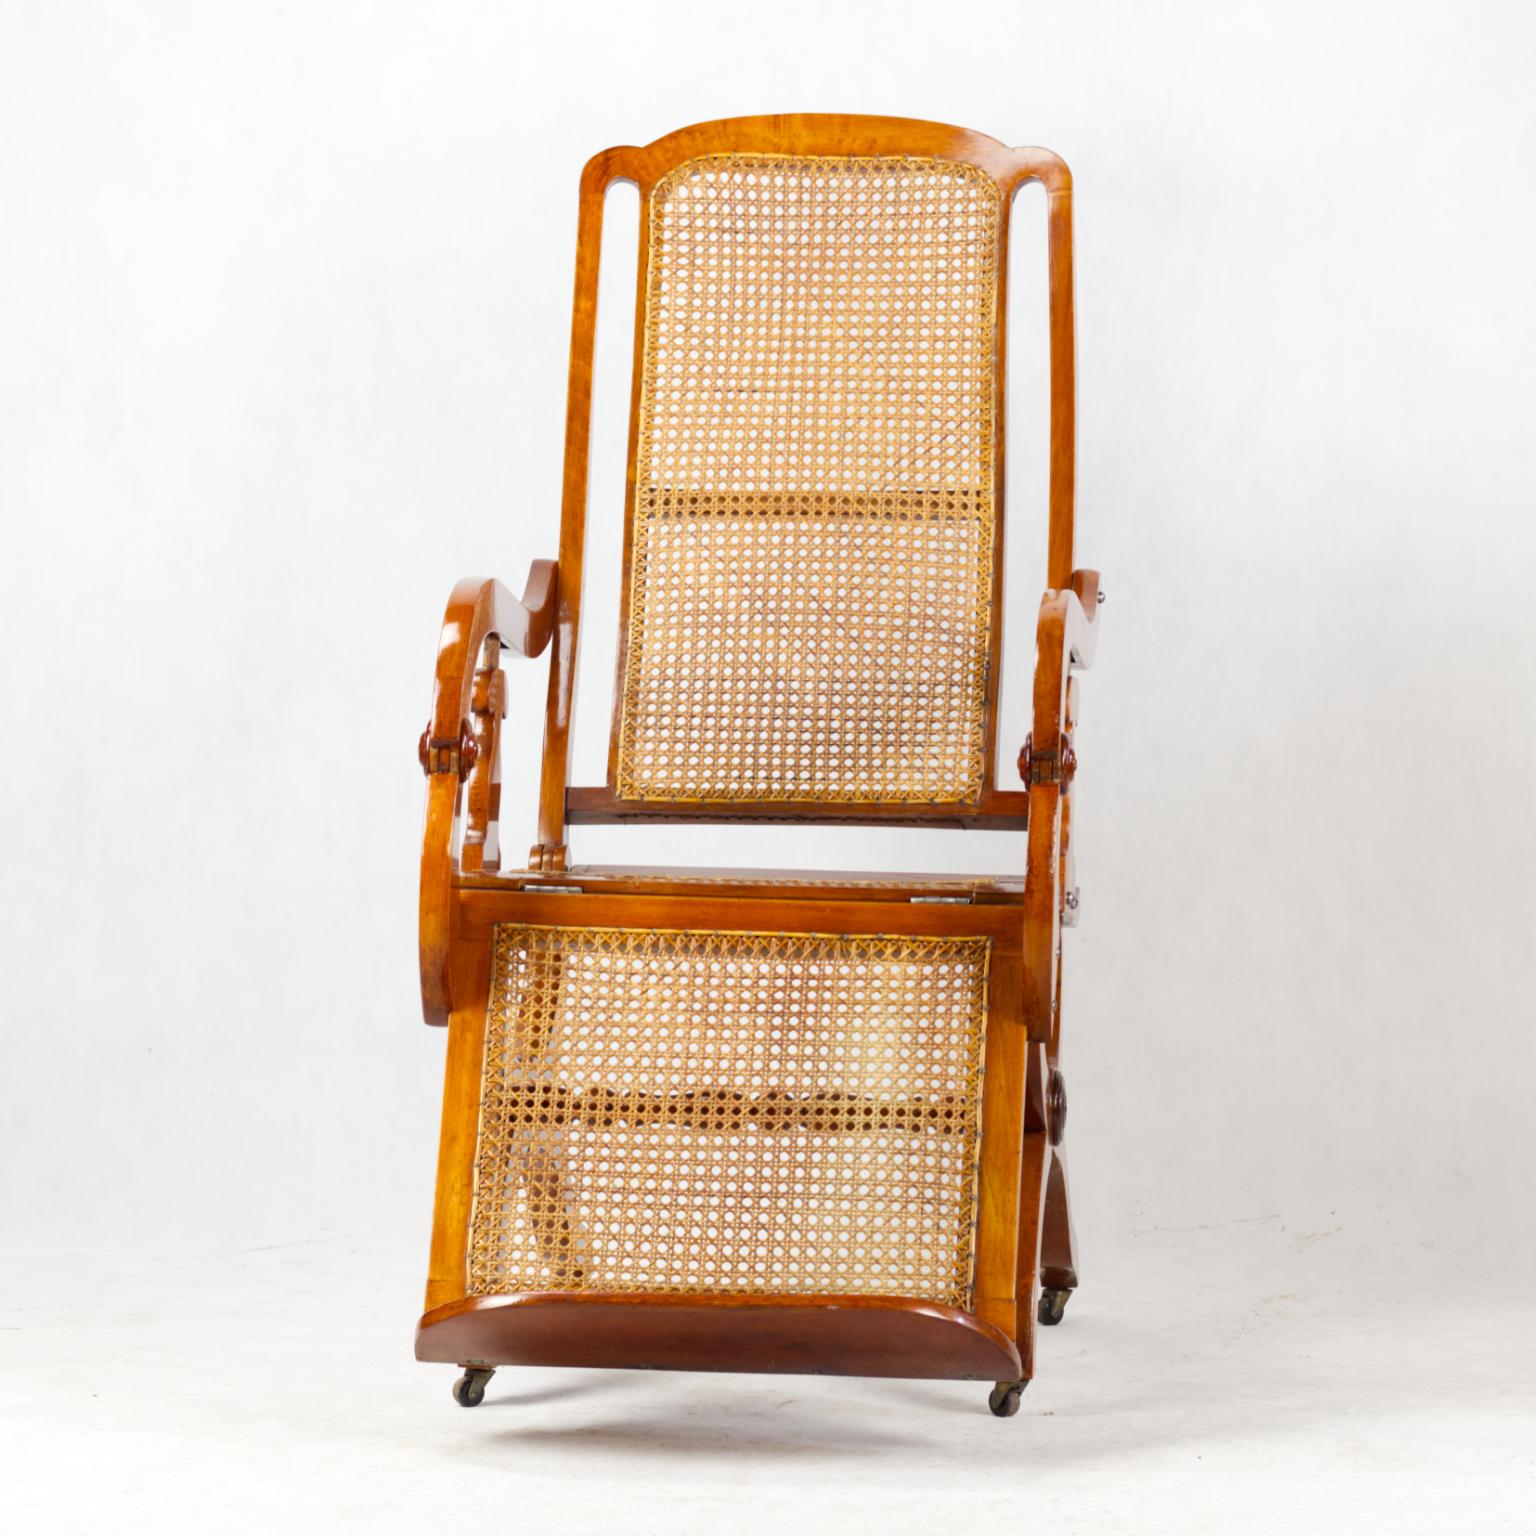 Grand fauteuil inclinable Biedermeier, fin du XIXe siècle.
Entièrement restauré.